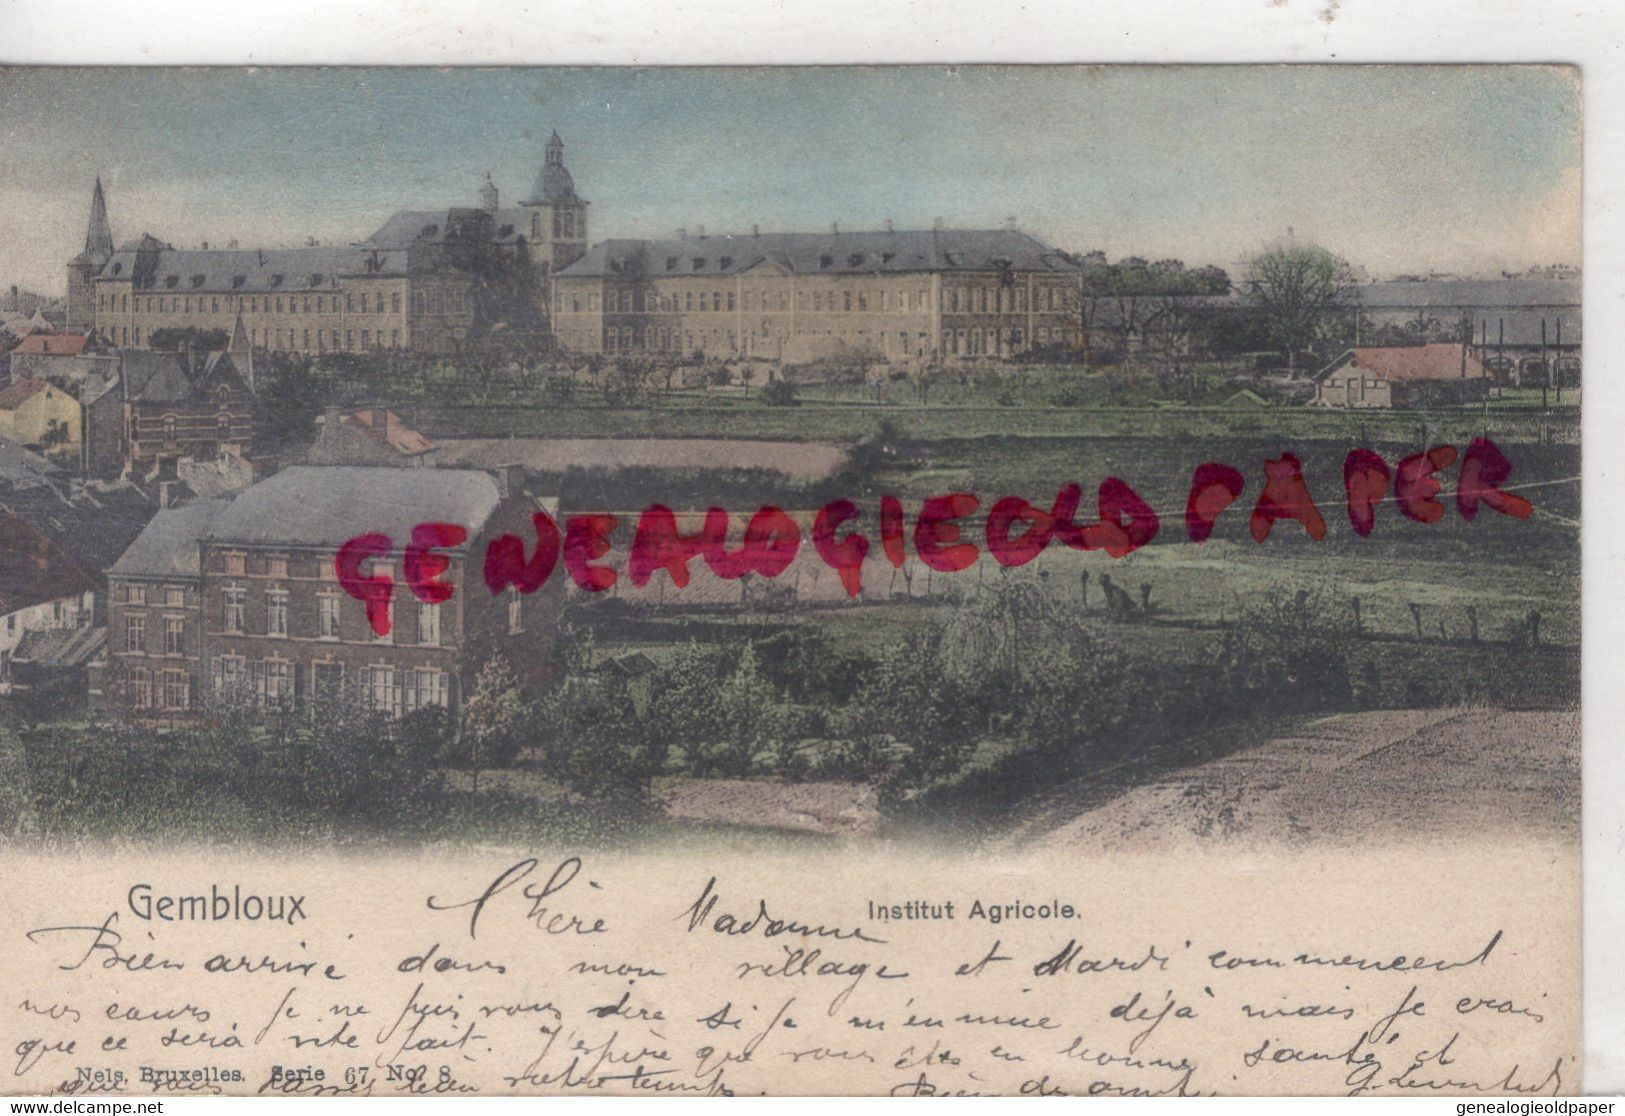 BELGIQUE- GEMBLOUX - INSTITUT AGRICOLE - MME RIBIERE 19 RUE CAVE PARIS - 1904- BELLE CARTE COLORISEE - Gembloux